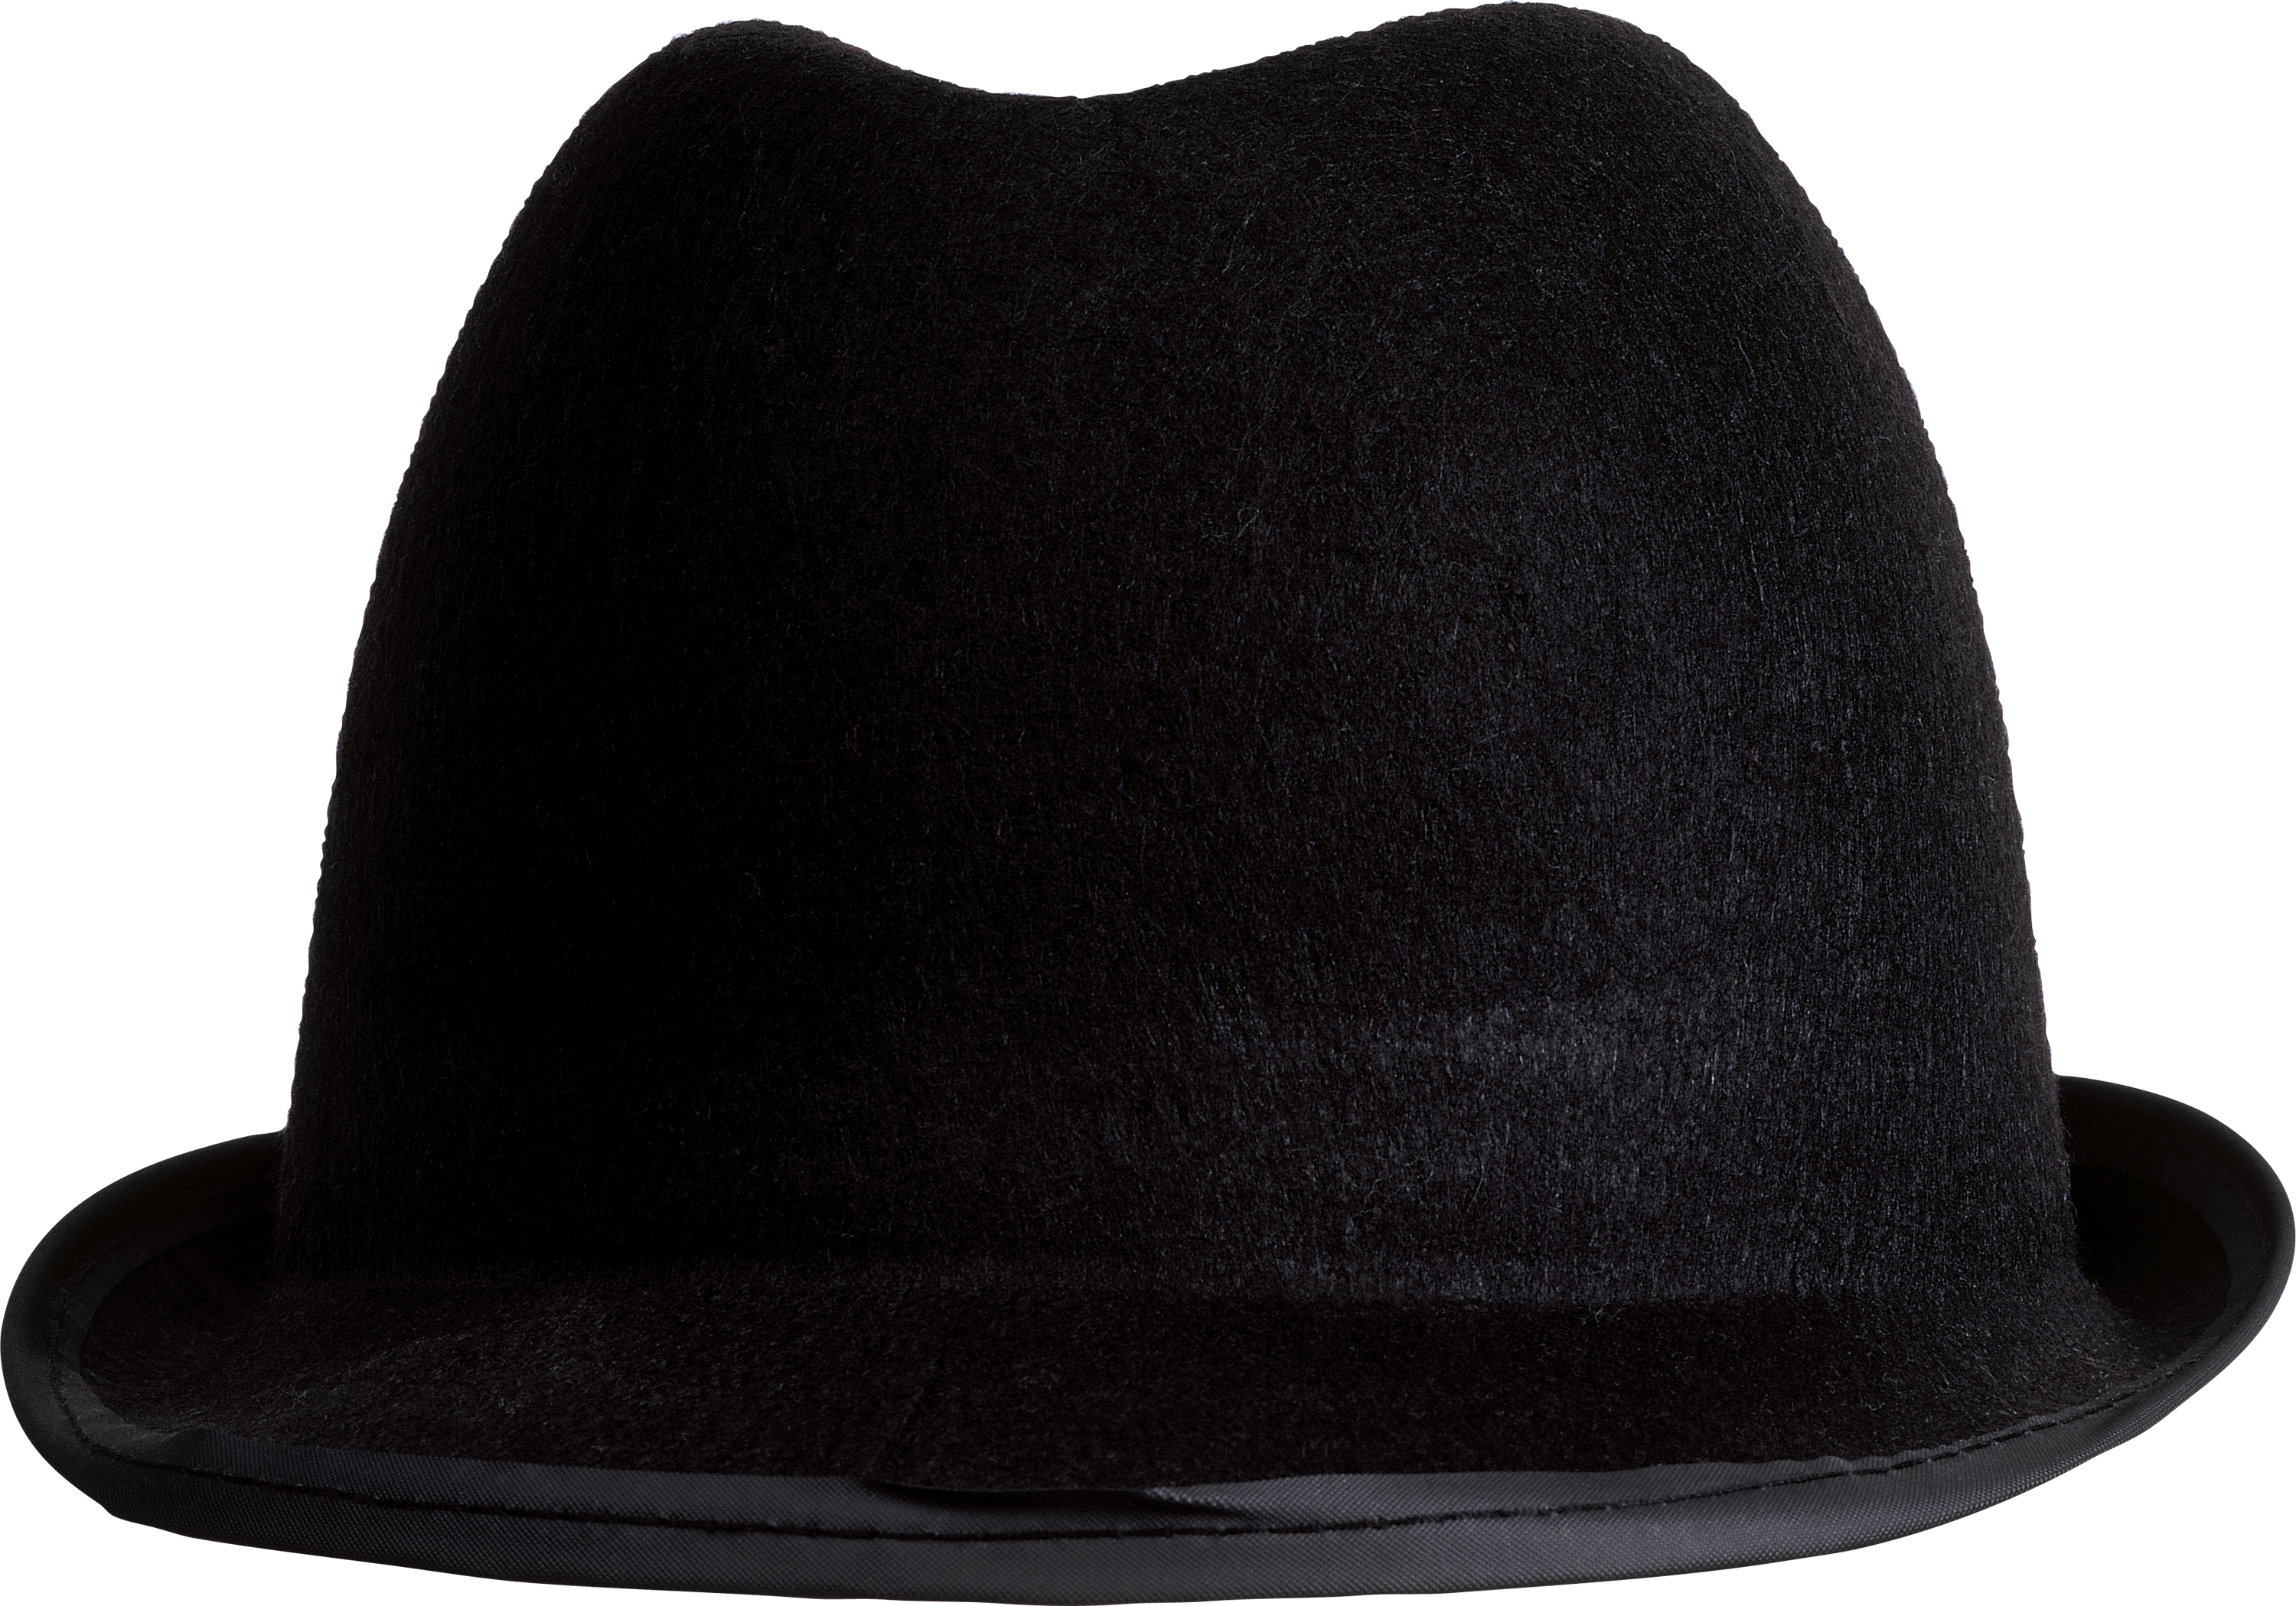 Augen hat. Шляпа. Шляпа черная. Мужская шляпа на прозрачном фоне. Шляпа "котелок" черная.